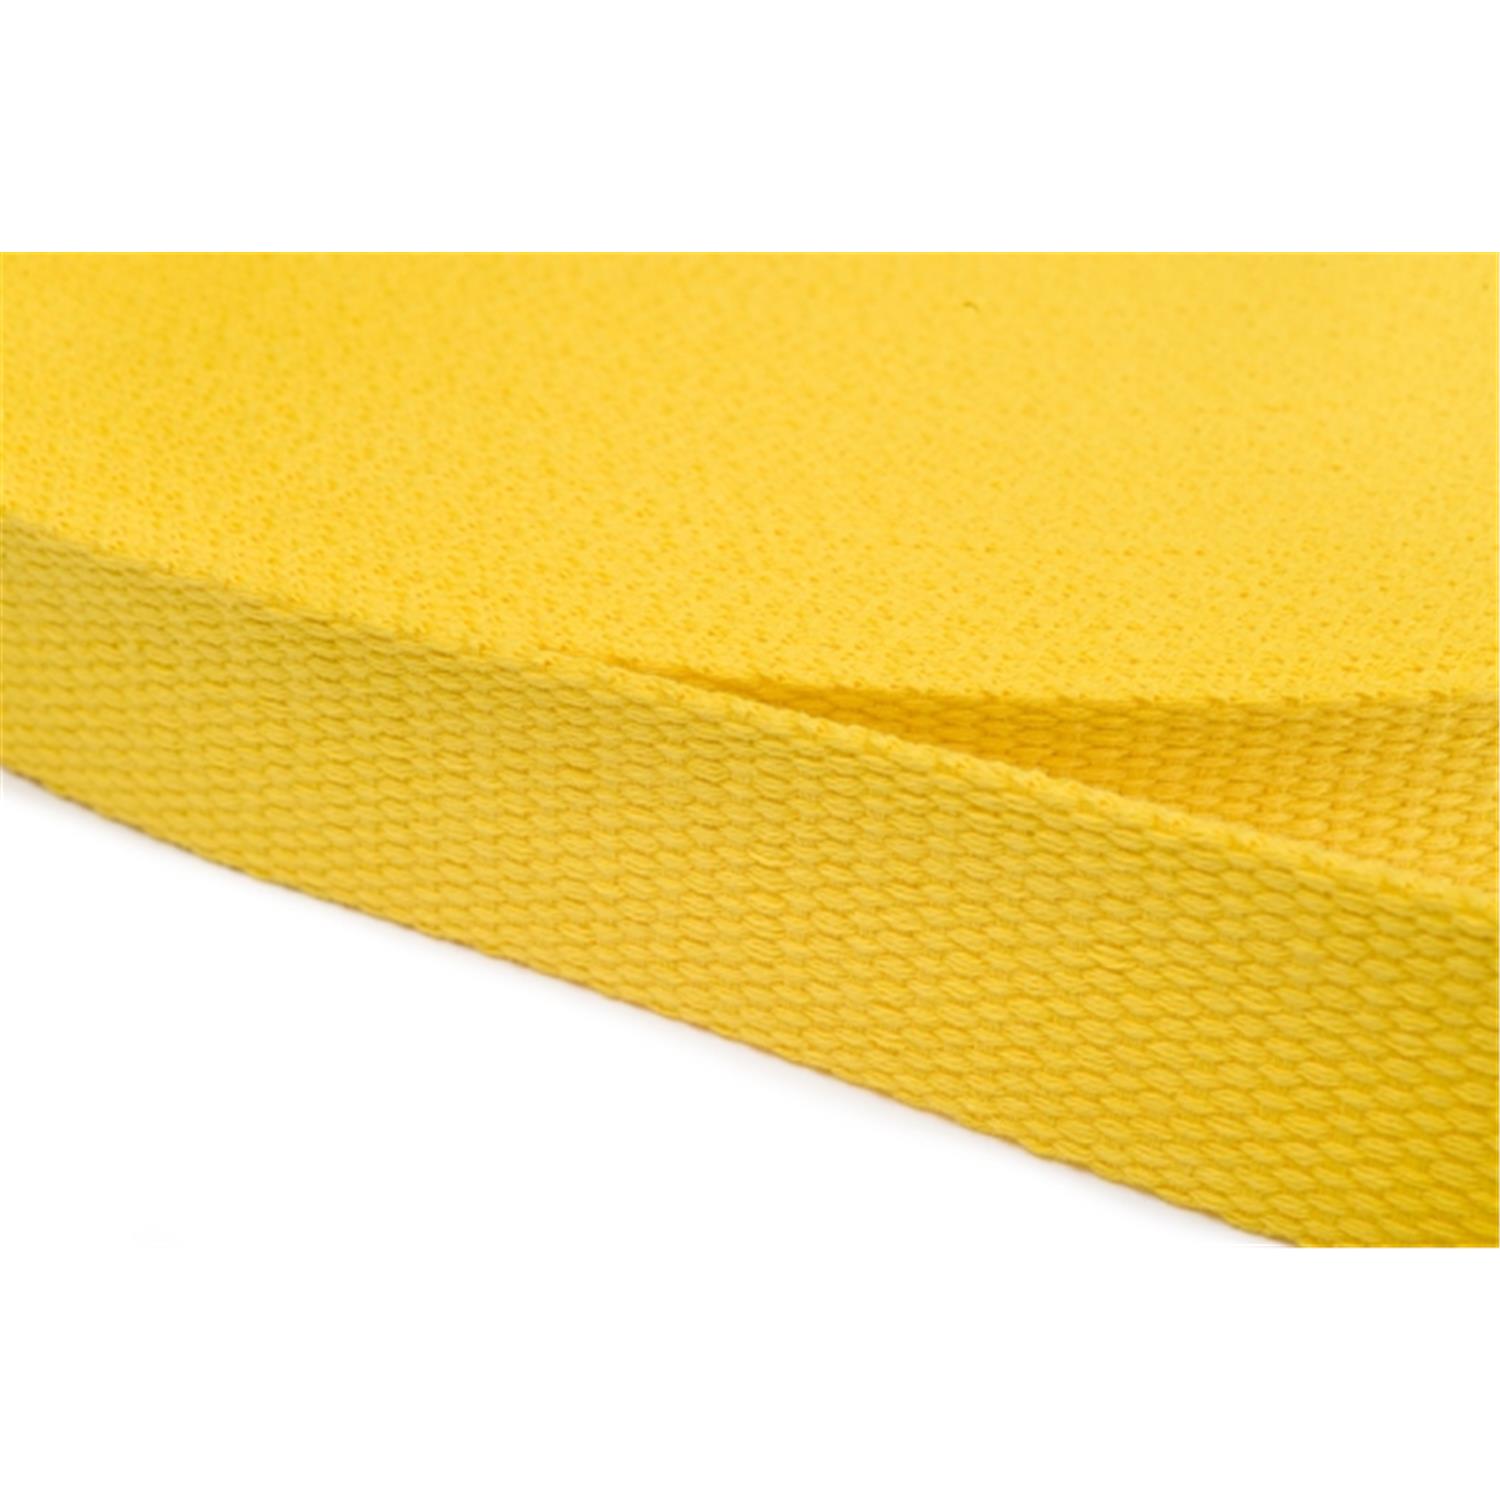 Gurtband aus Baumwolle 25mm in 20 Farben 05 - gelb 6 Meter